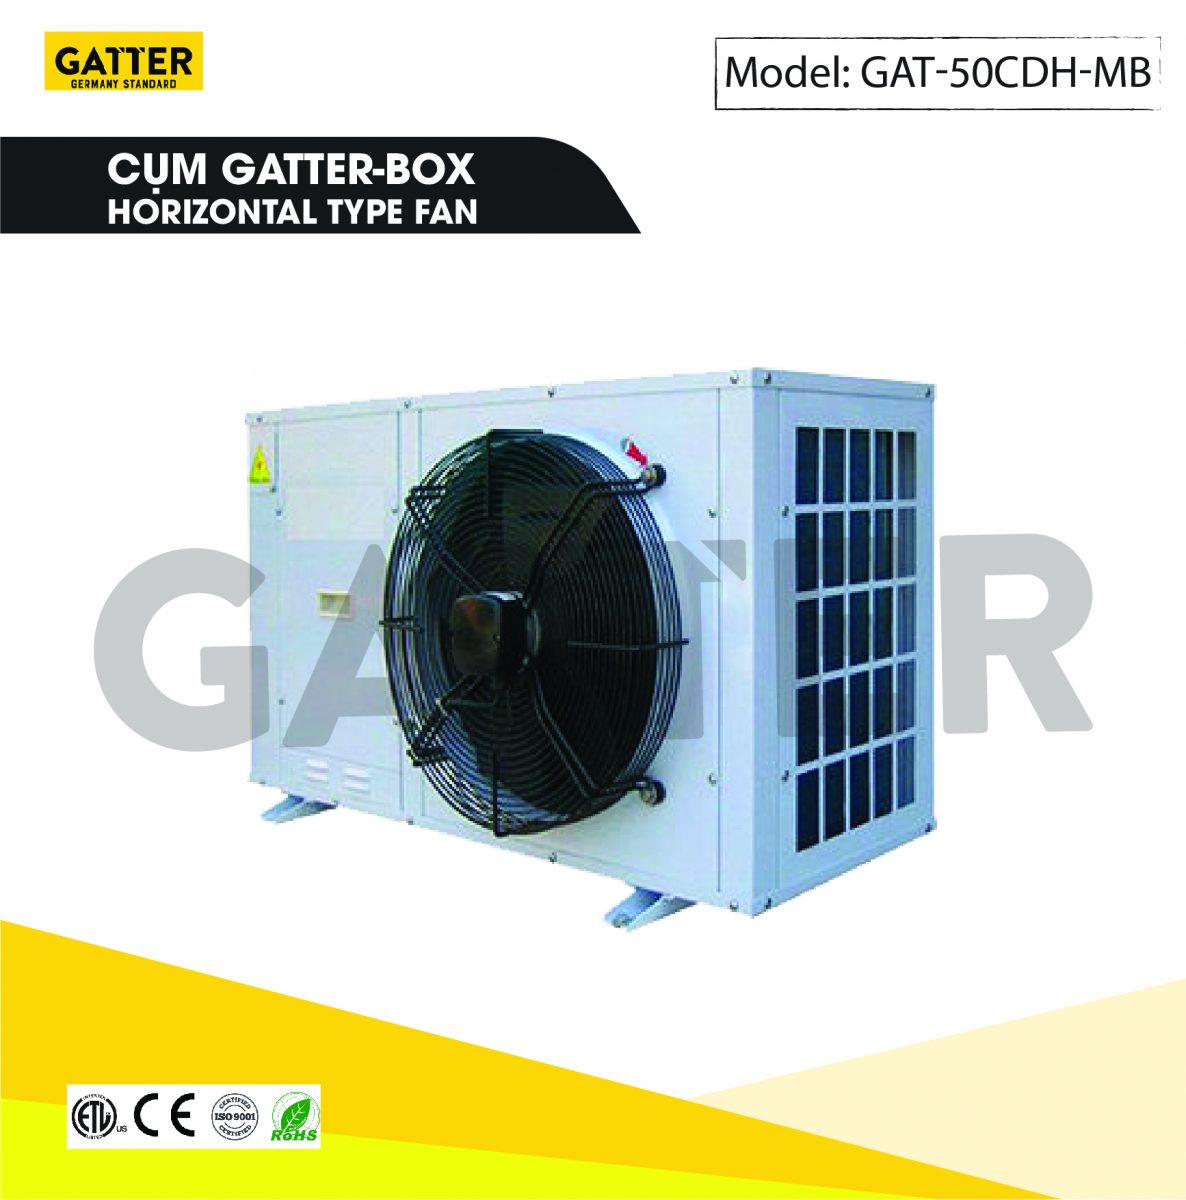 Cụm máy nén Gatter-box GAT-50CDH-MB